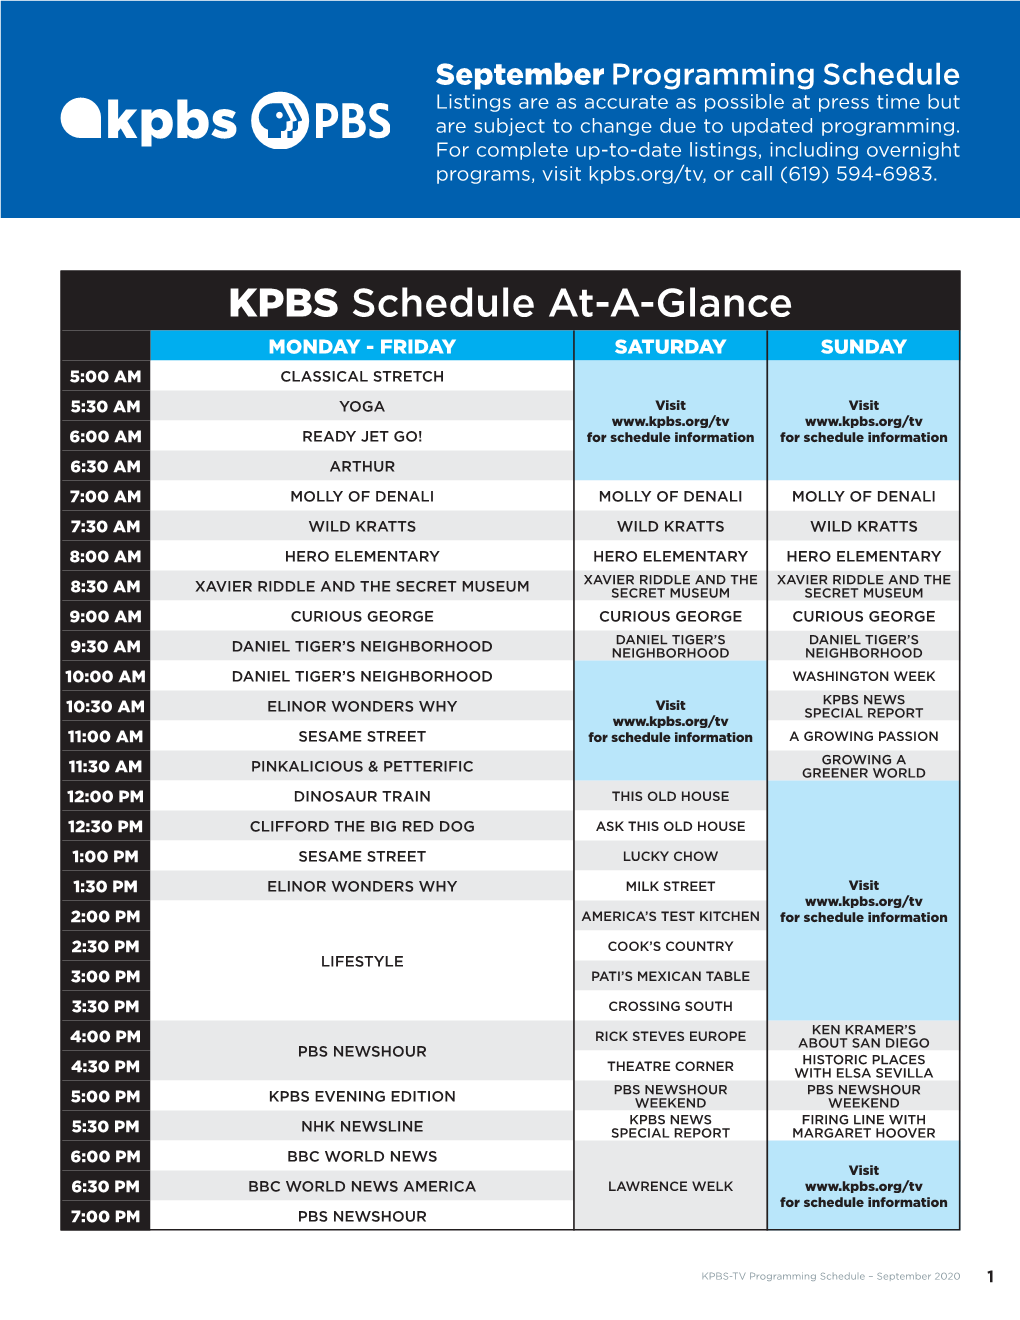 KPBS September TV Listings